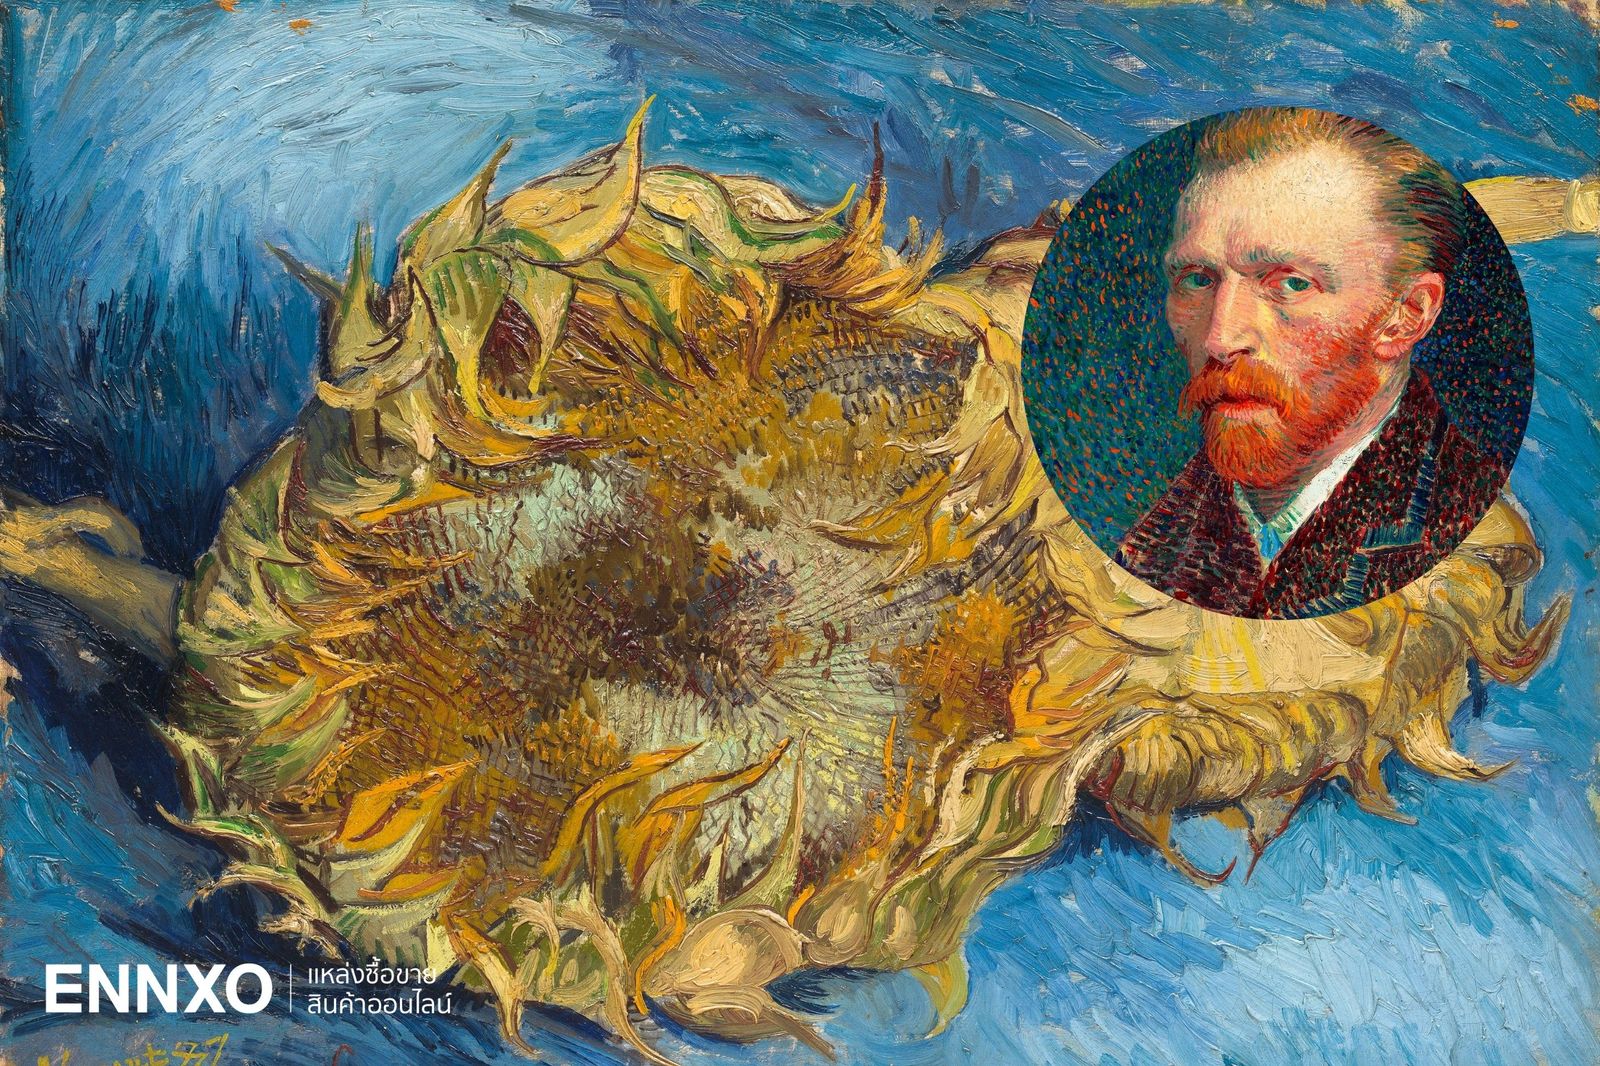 แวนโก๊ะ (Van Gogh) กับดอกทานตะวัน ศึกษาความหมายและประวัติ 